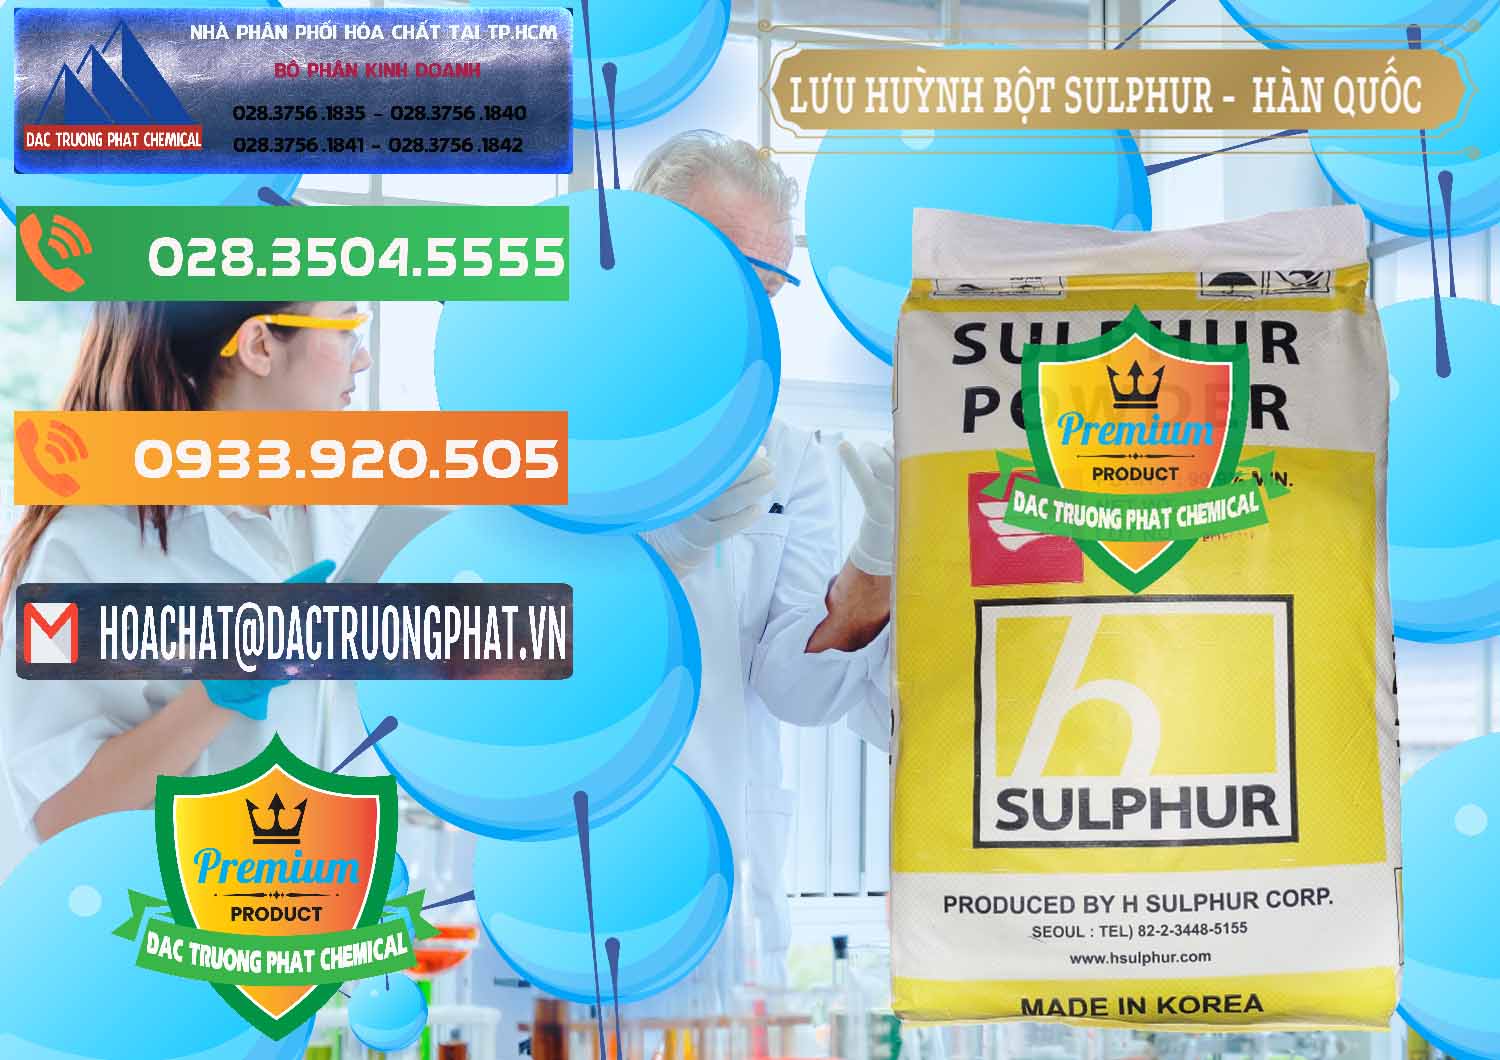 Chuyên bán ( cung ứng ) Lưu huỳnh Bột - Sulfur Powder ( H Sulfur ) Hàn Quốc Korea - 0199 - Nơi phân phối ( bán ) hóa chất tại TP.HCM - hoachatxulynuoc.com.vn